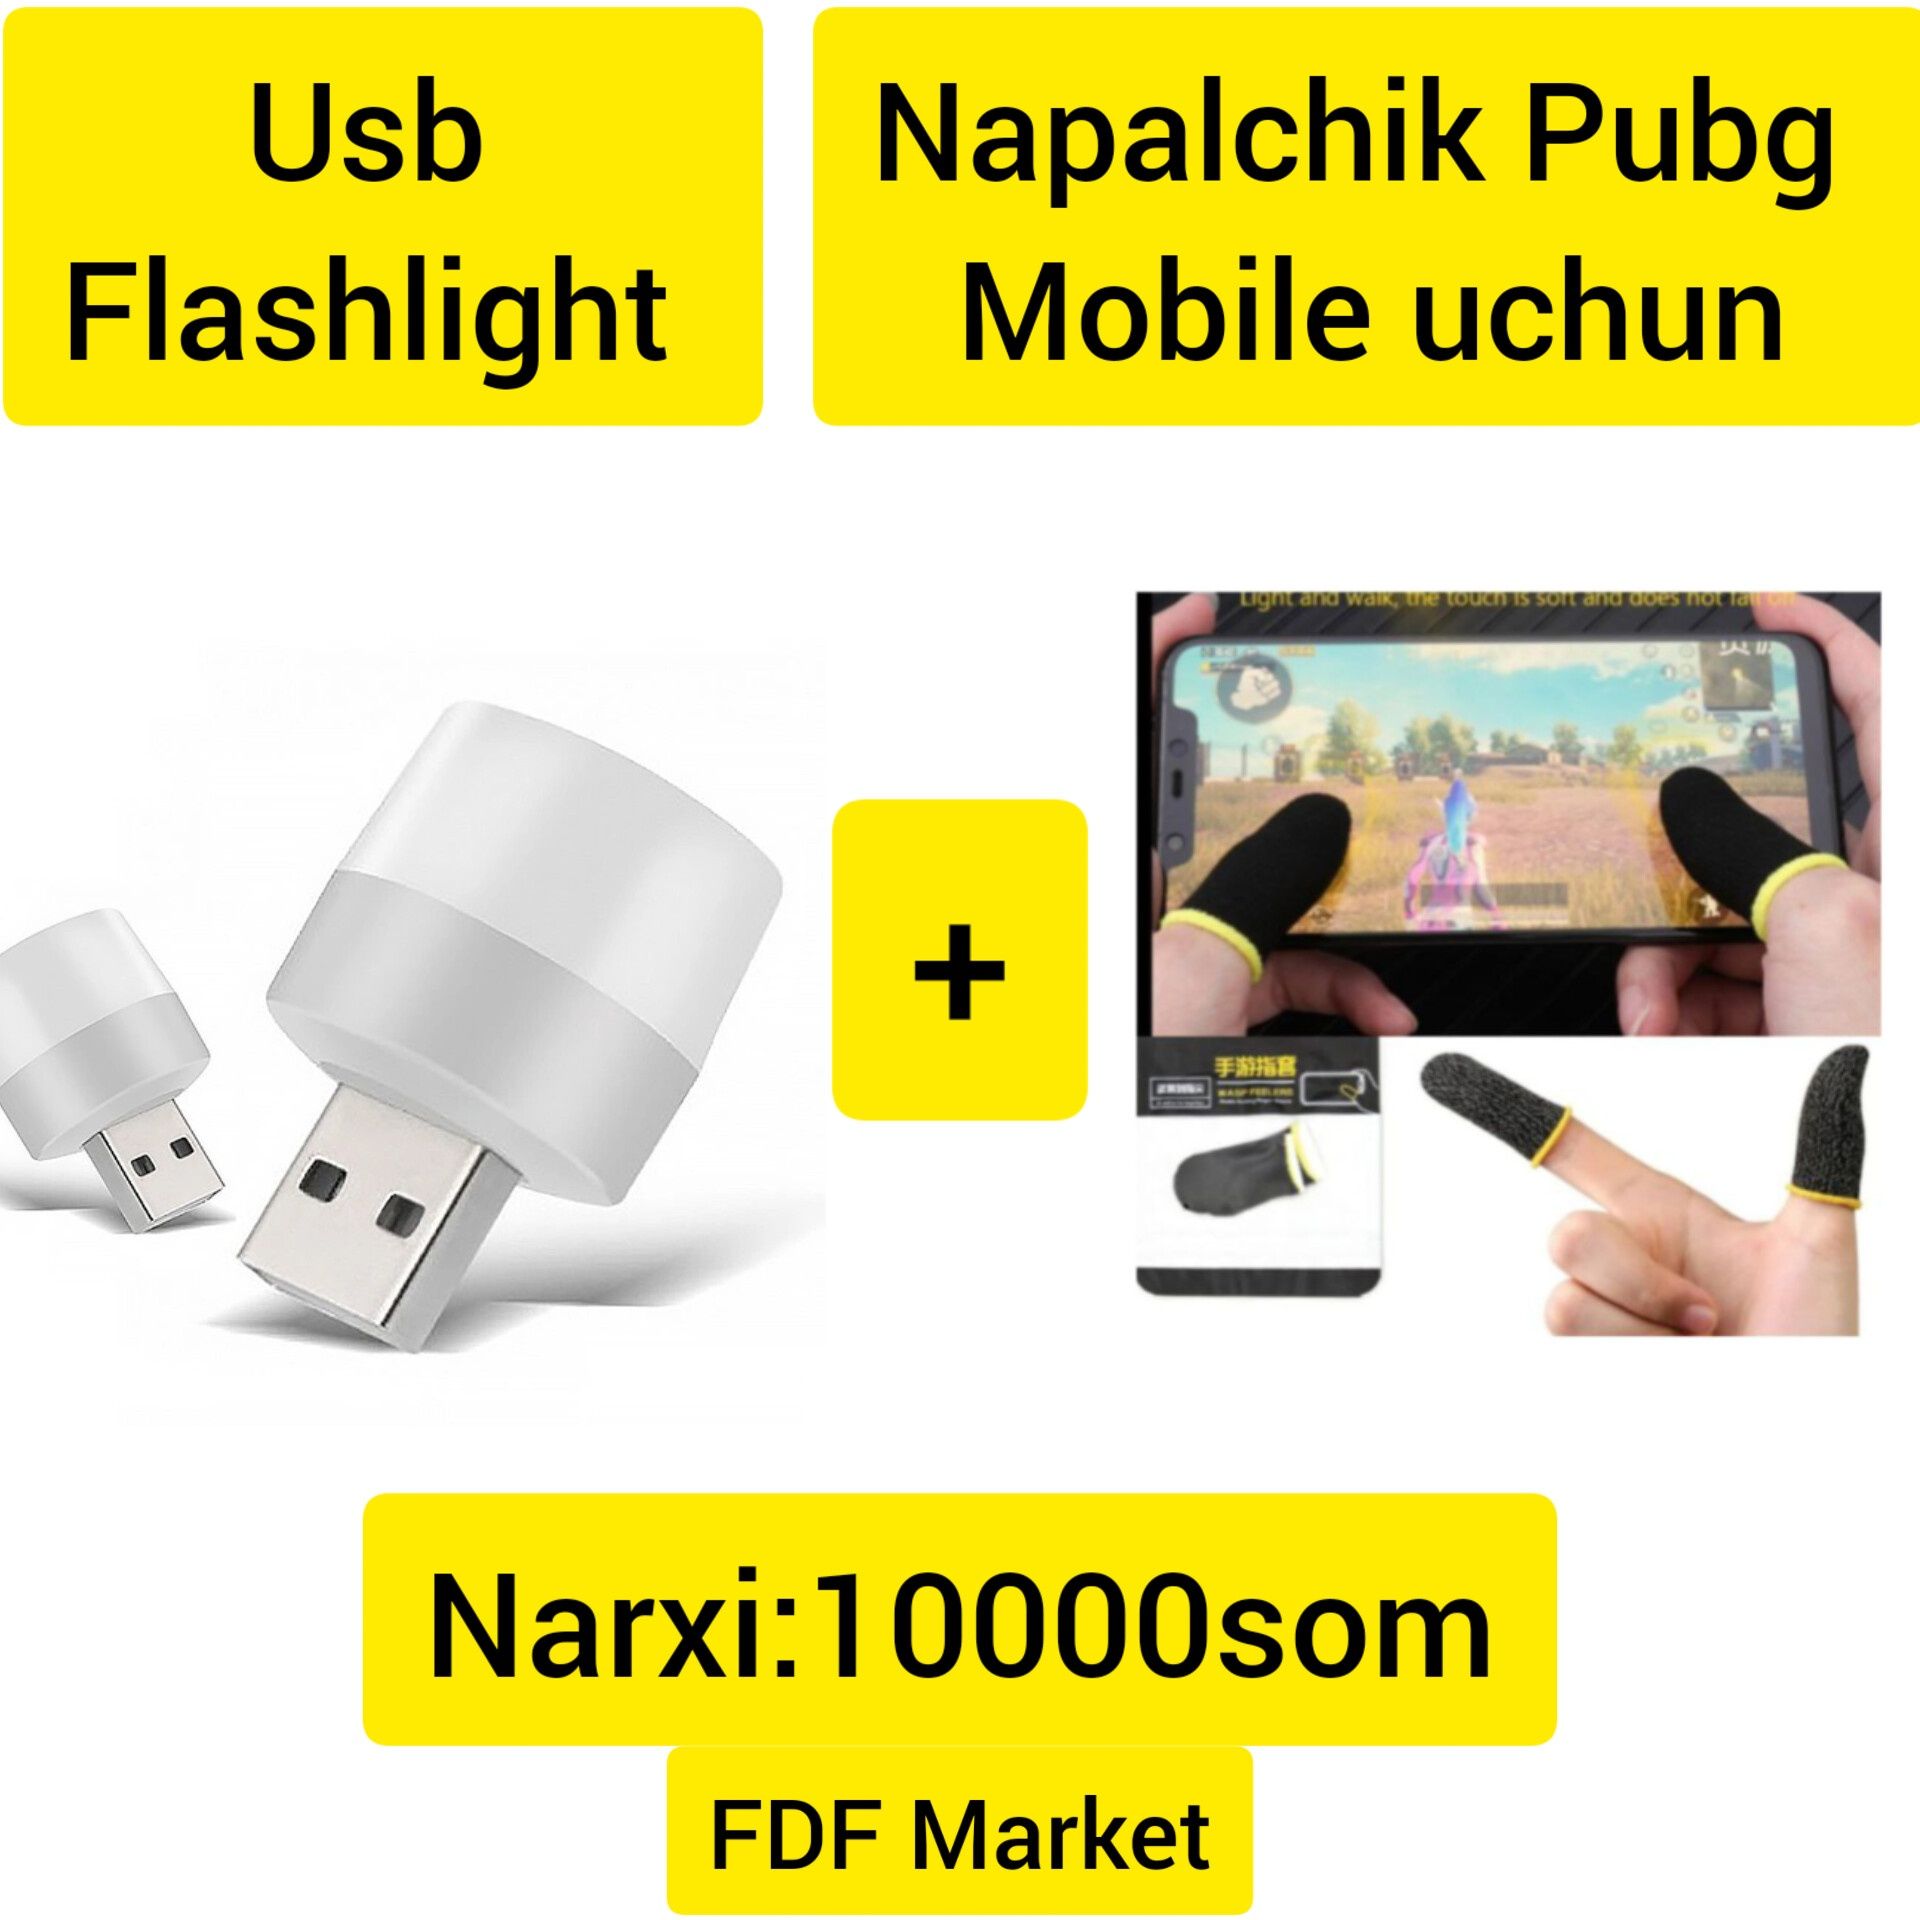 USB Flashlight Aksiya !  Bonusga Pubg mobile uchun napalchik